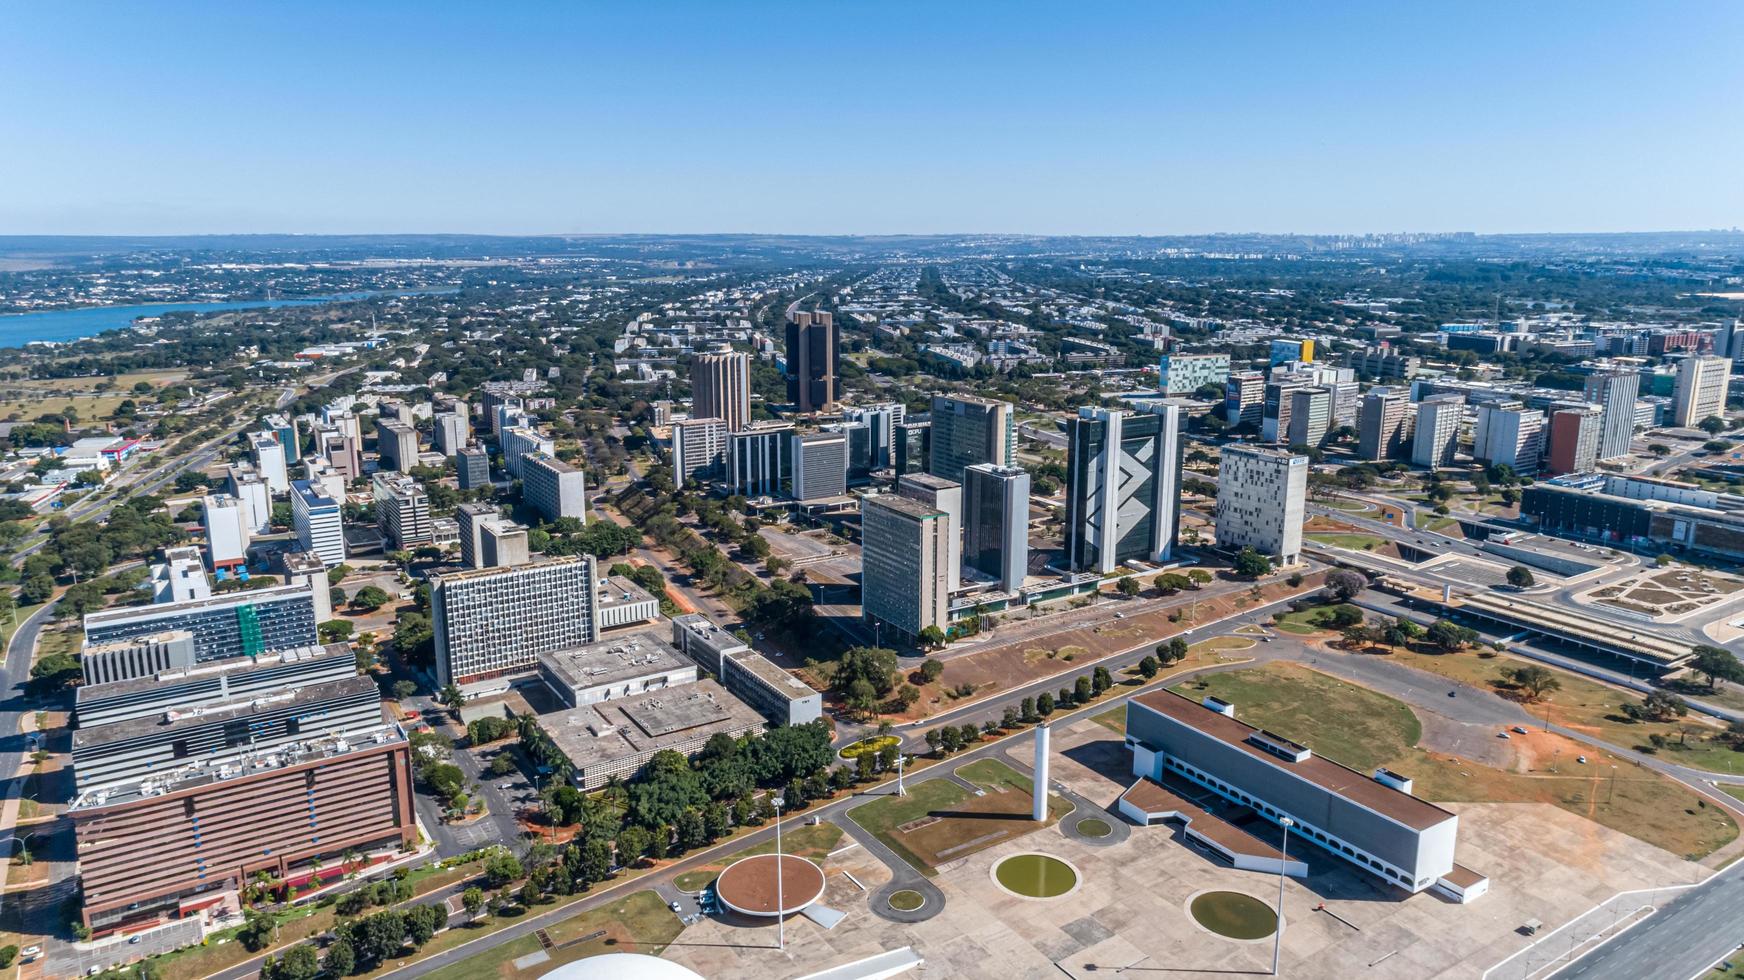 brasilia, distrito federal brasil alrededor de junio de 2020 foto aérea de brasilia, capital de brasil.